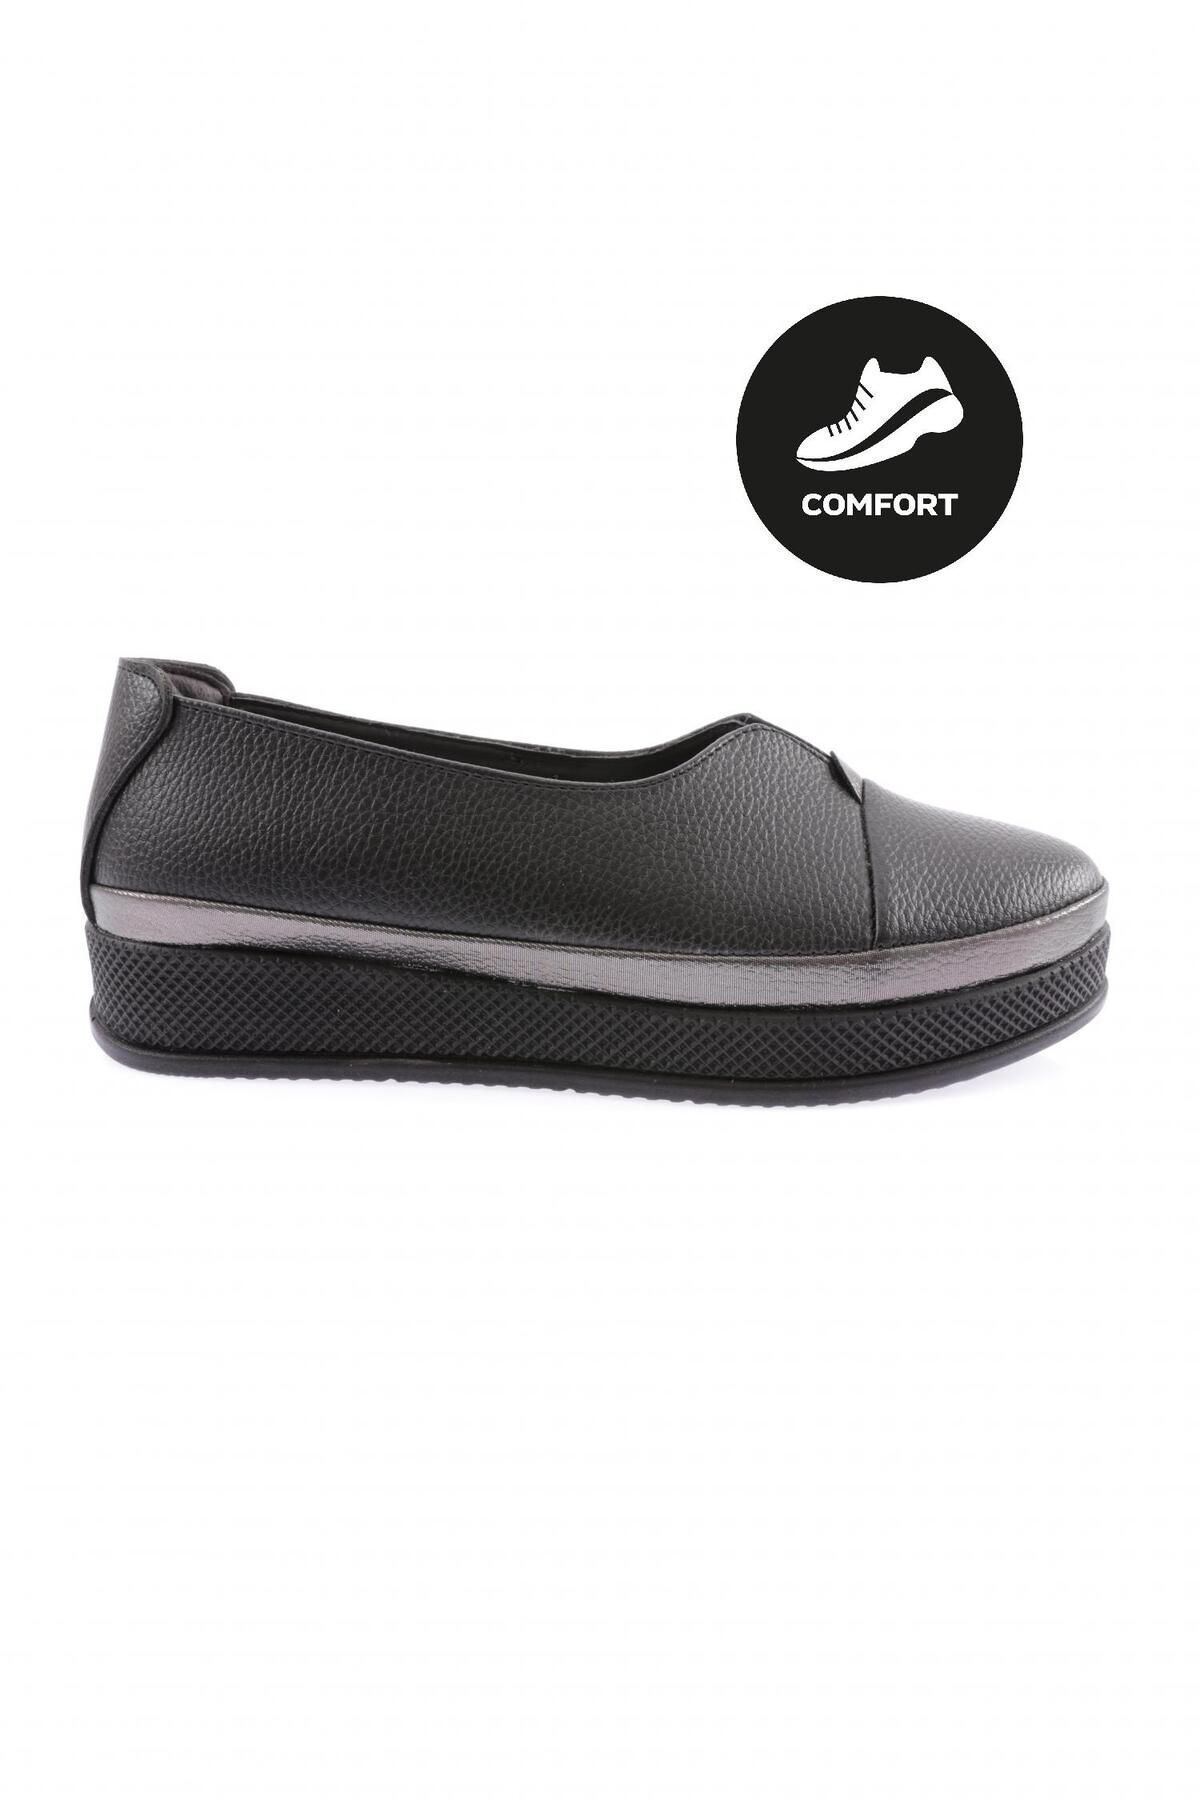 Dgn 170 Kadın Kalın Taban Comfort Ayakkabı Siyah